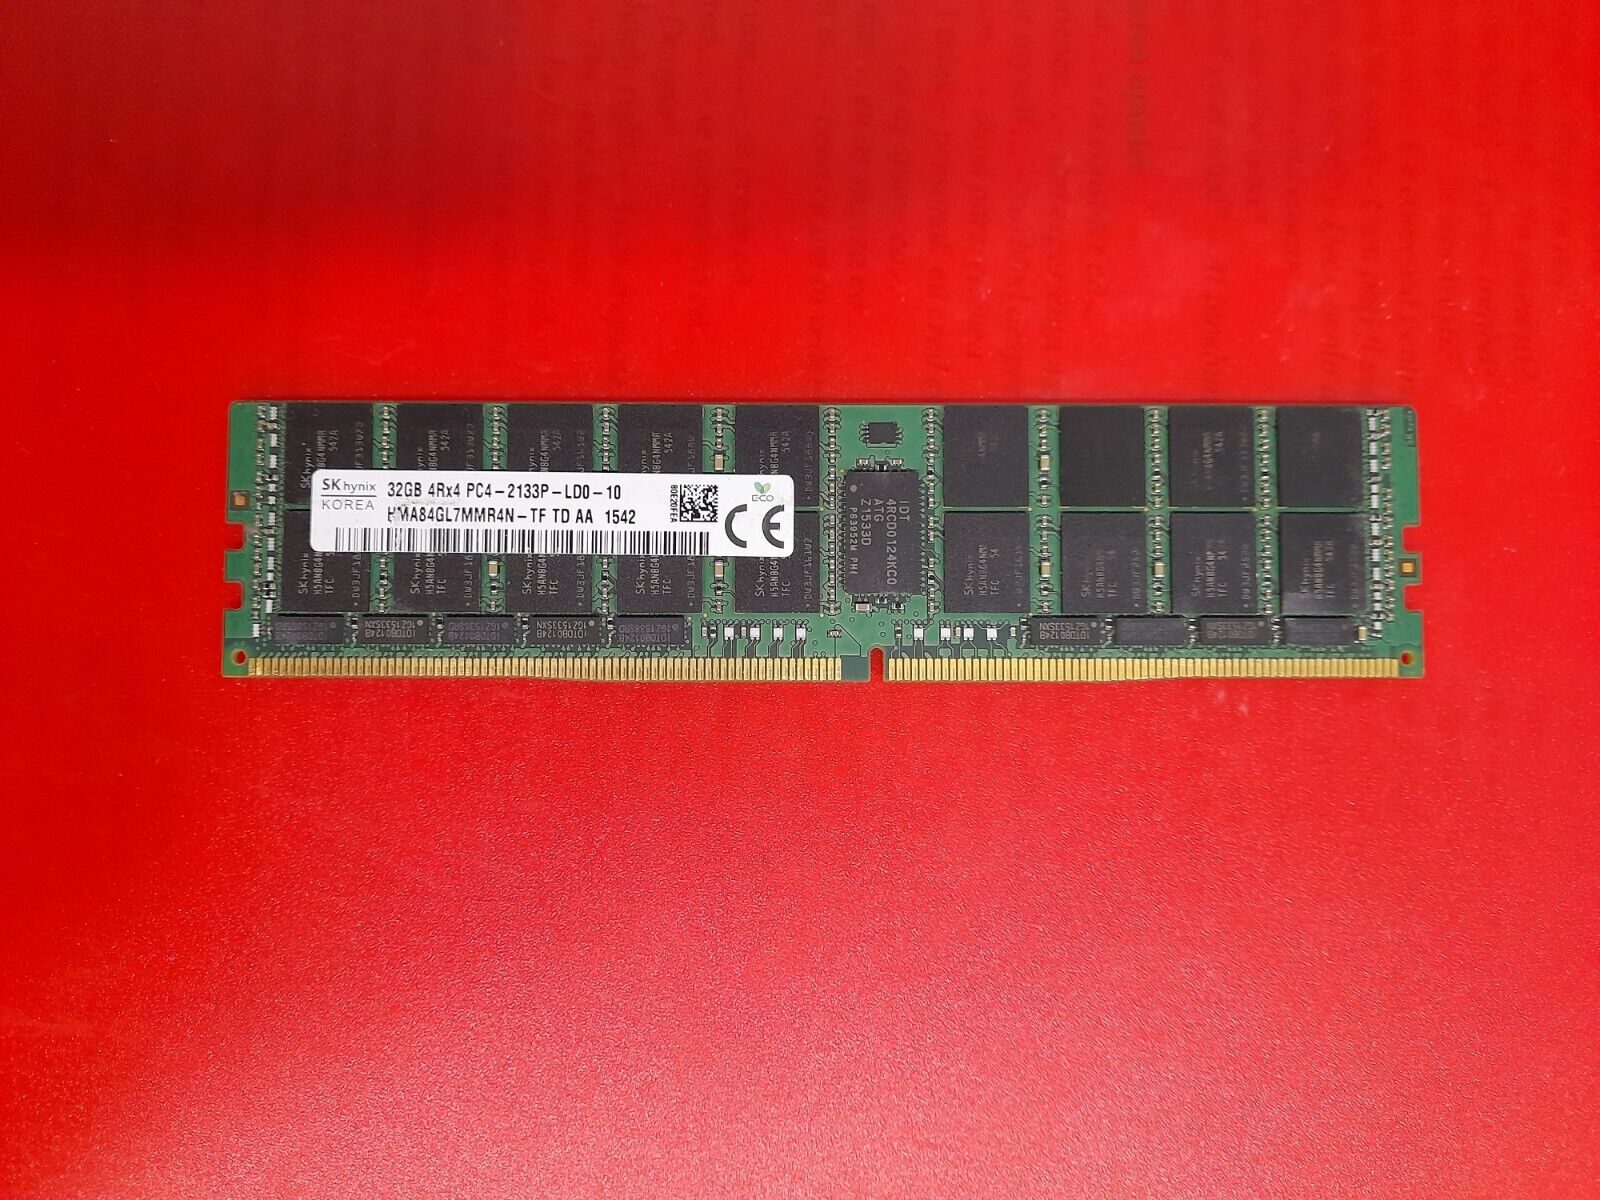 32GB HYNIX HMA84GL7MMR4N-TF TD AA  PC4-2133P DDR4 Server ECC REG memory